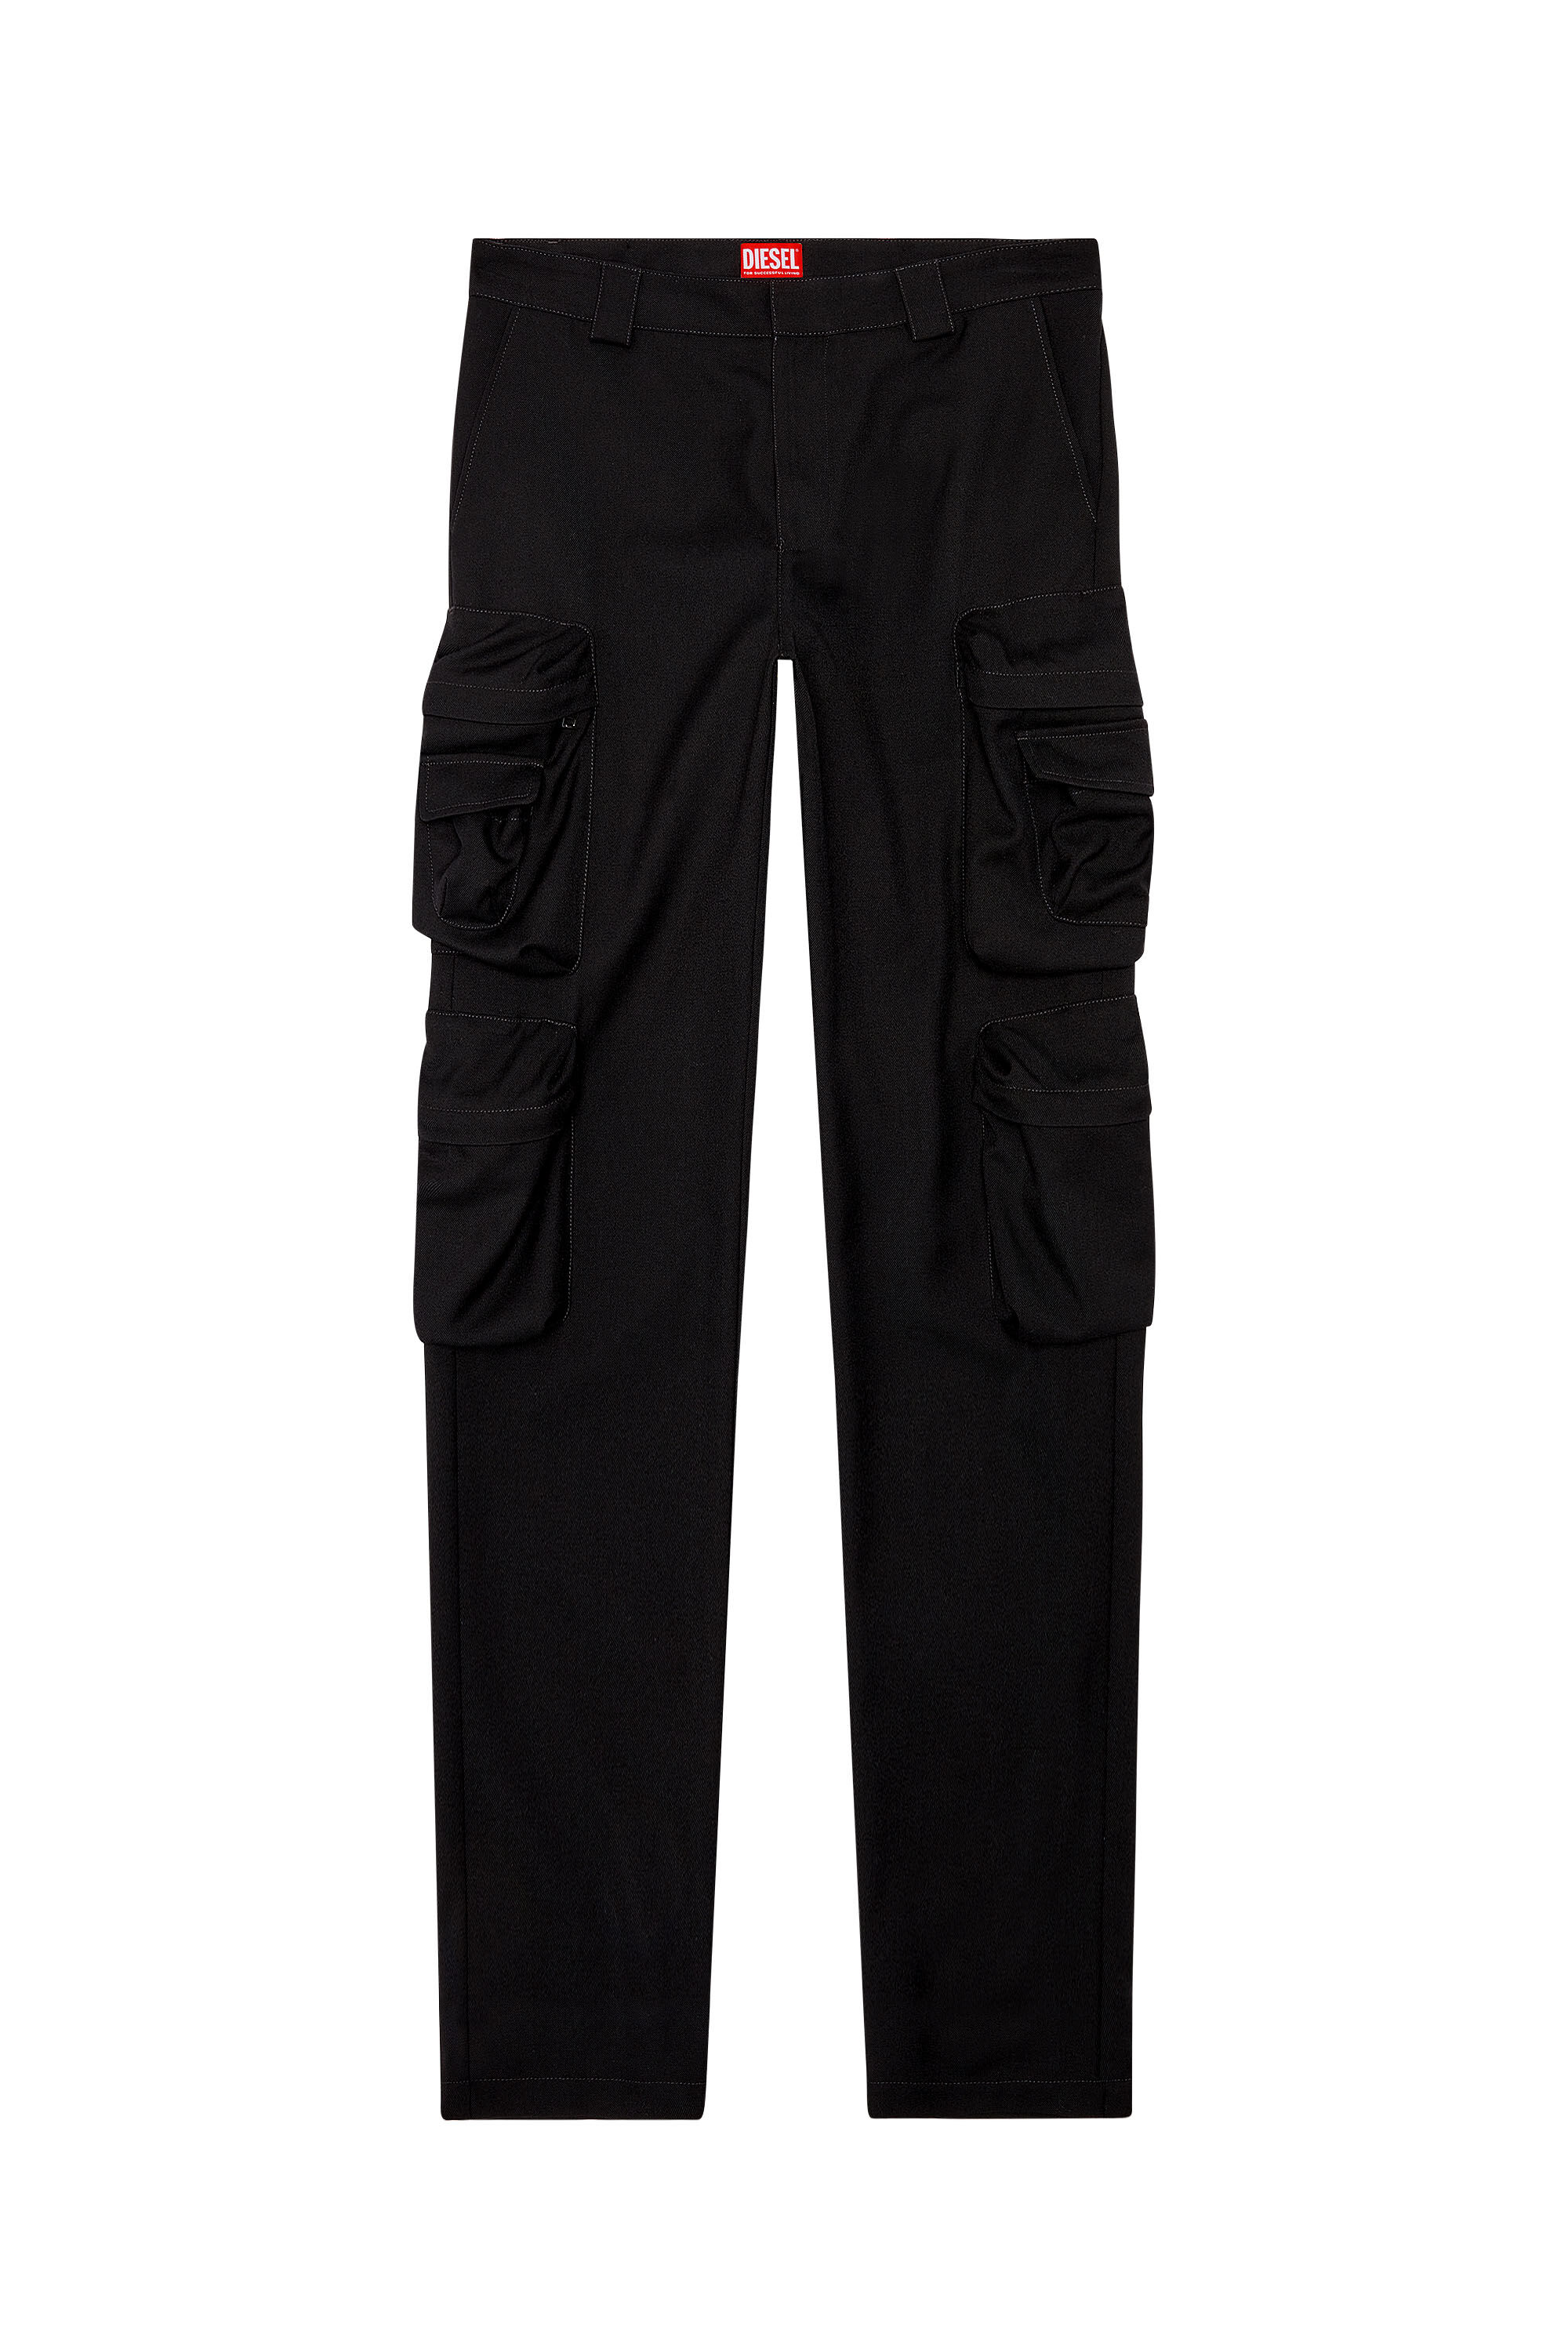 Diesel - P-LANKA, Man Cargo pants in cool wool in Black - Image 2